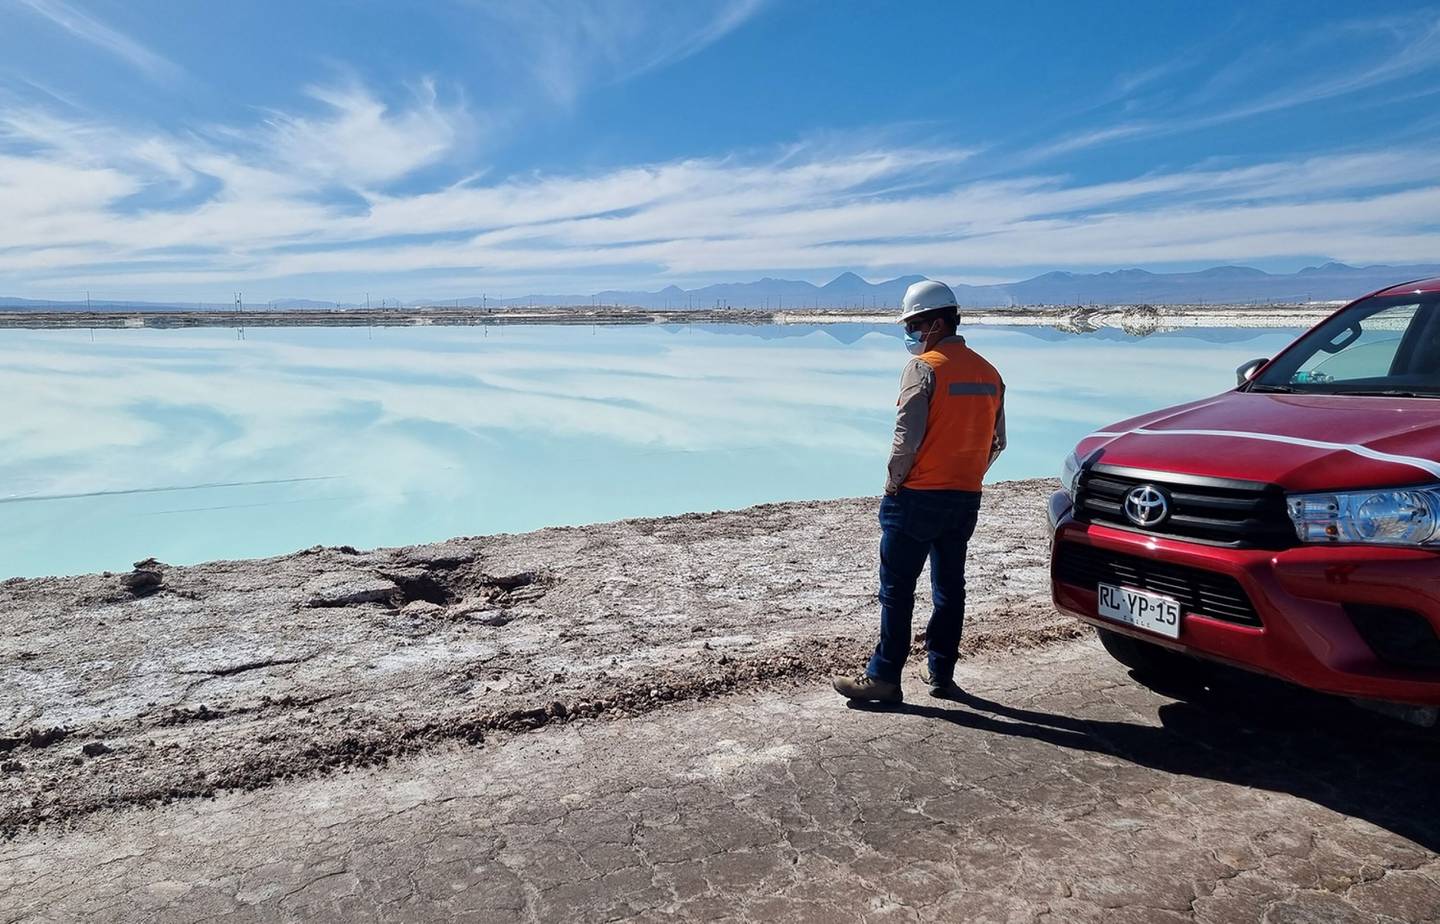 Una piscina gigante de evaporación de salmuera en Atacama en Chile. Foto: Bloombergdfd